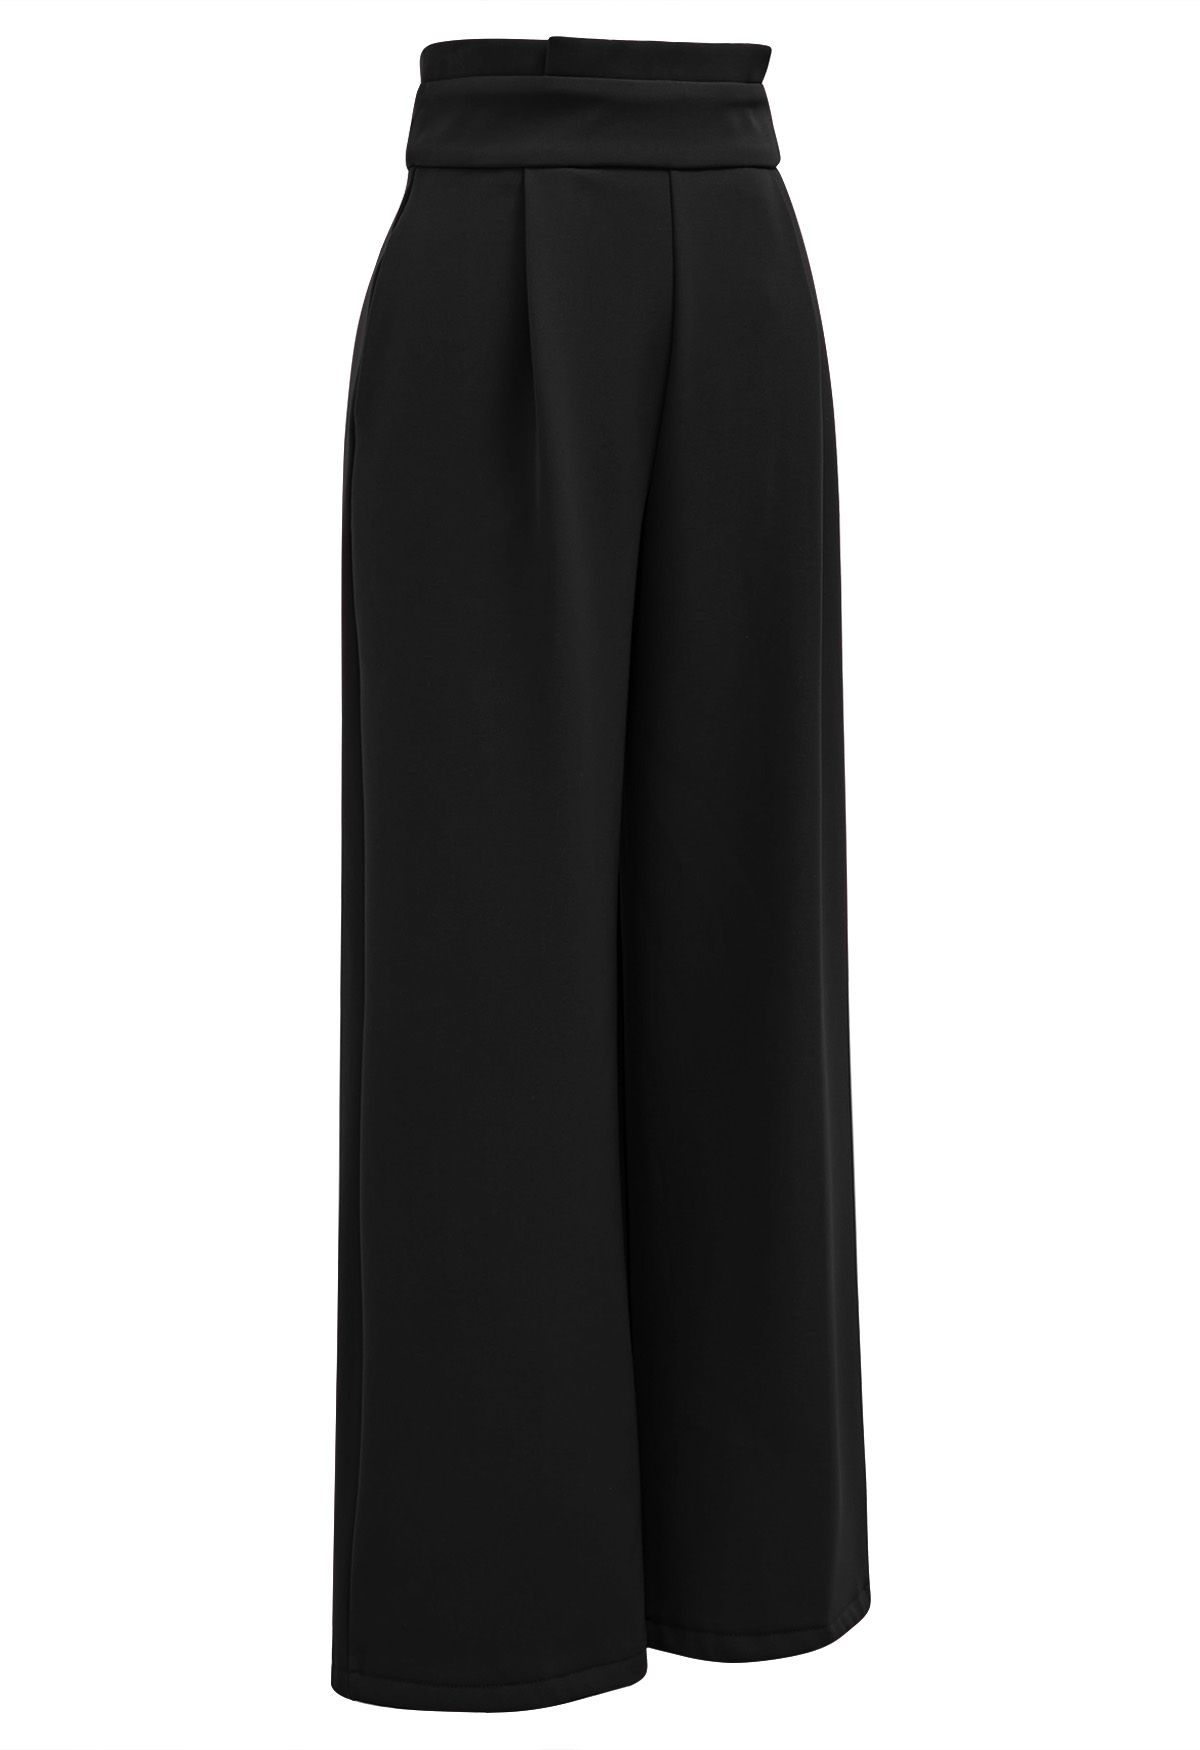 Pantalones rectos gruesos con cintura plisada en negro